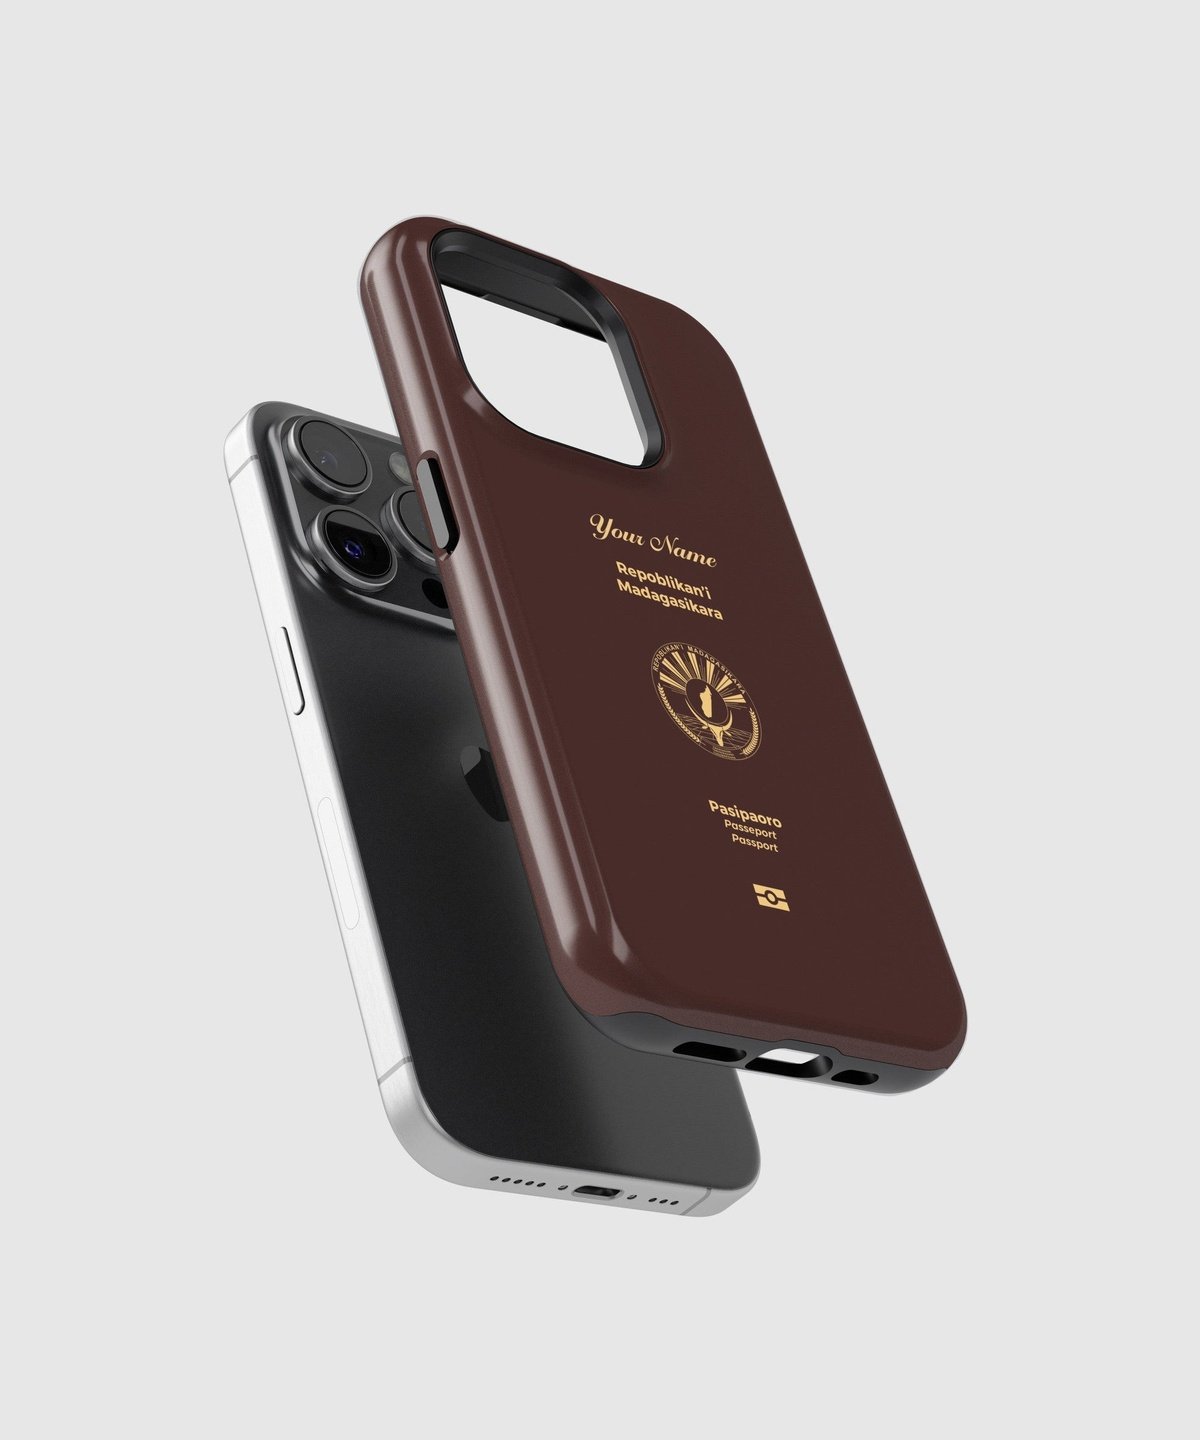 Madagascar Passport - iPhone Case